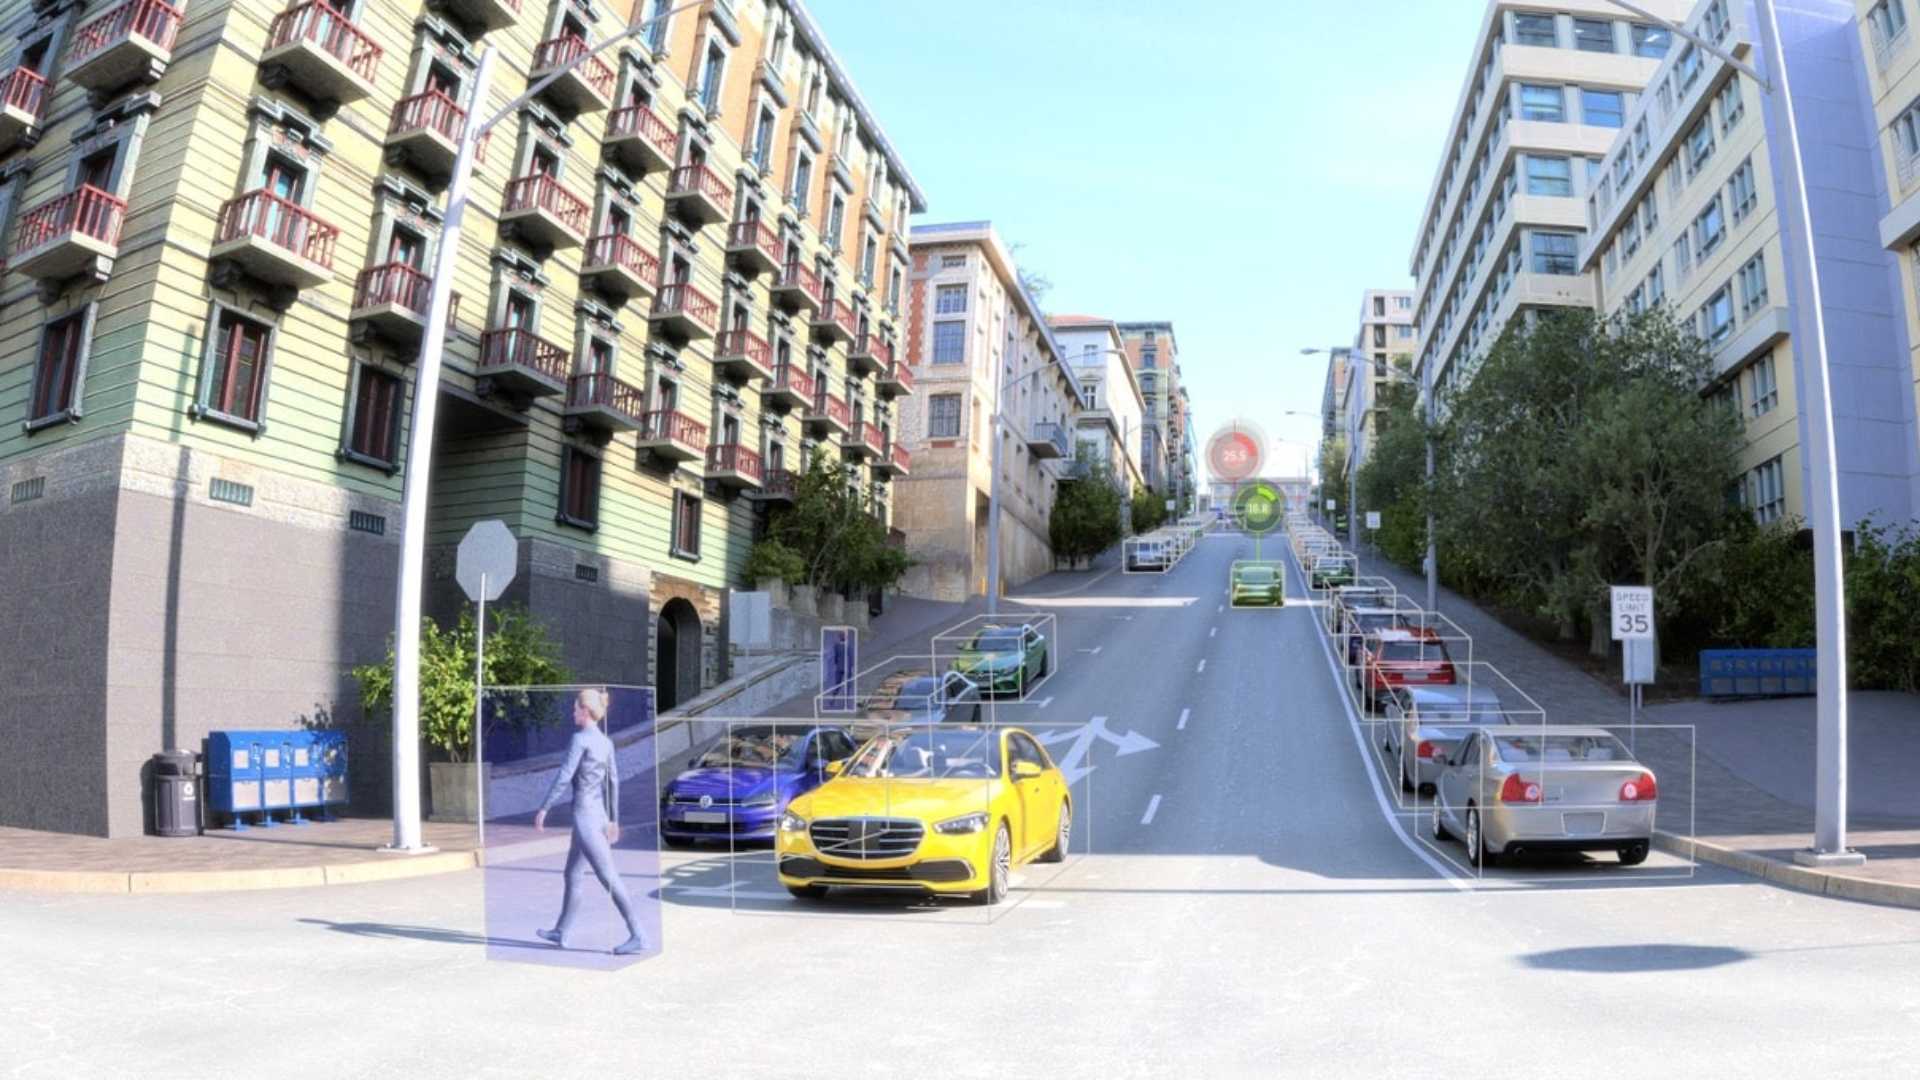 Ποιες καινοτομίες φέρνει η NVIDIA στην αυτόνομη οδήγηση;